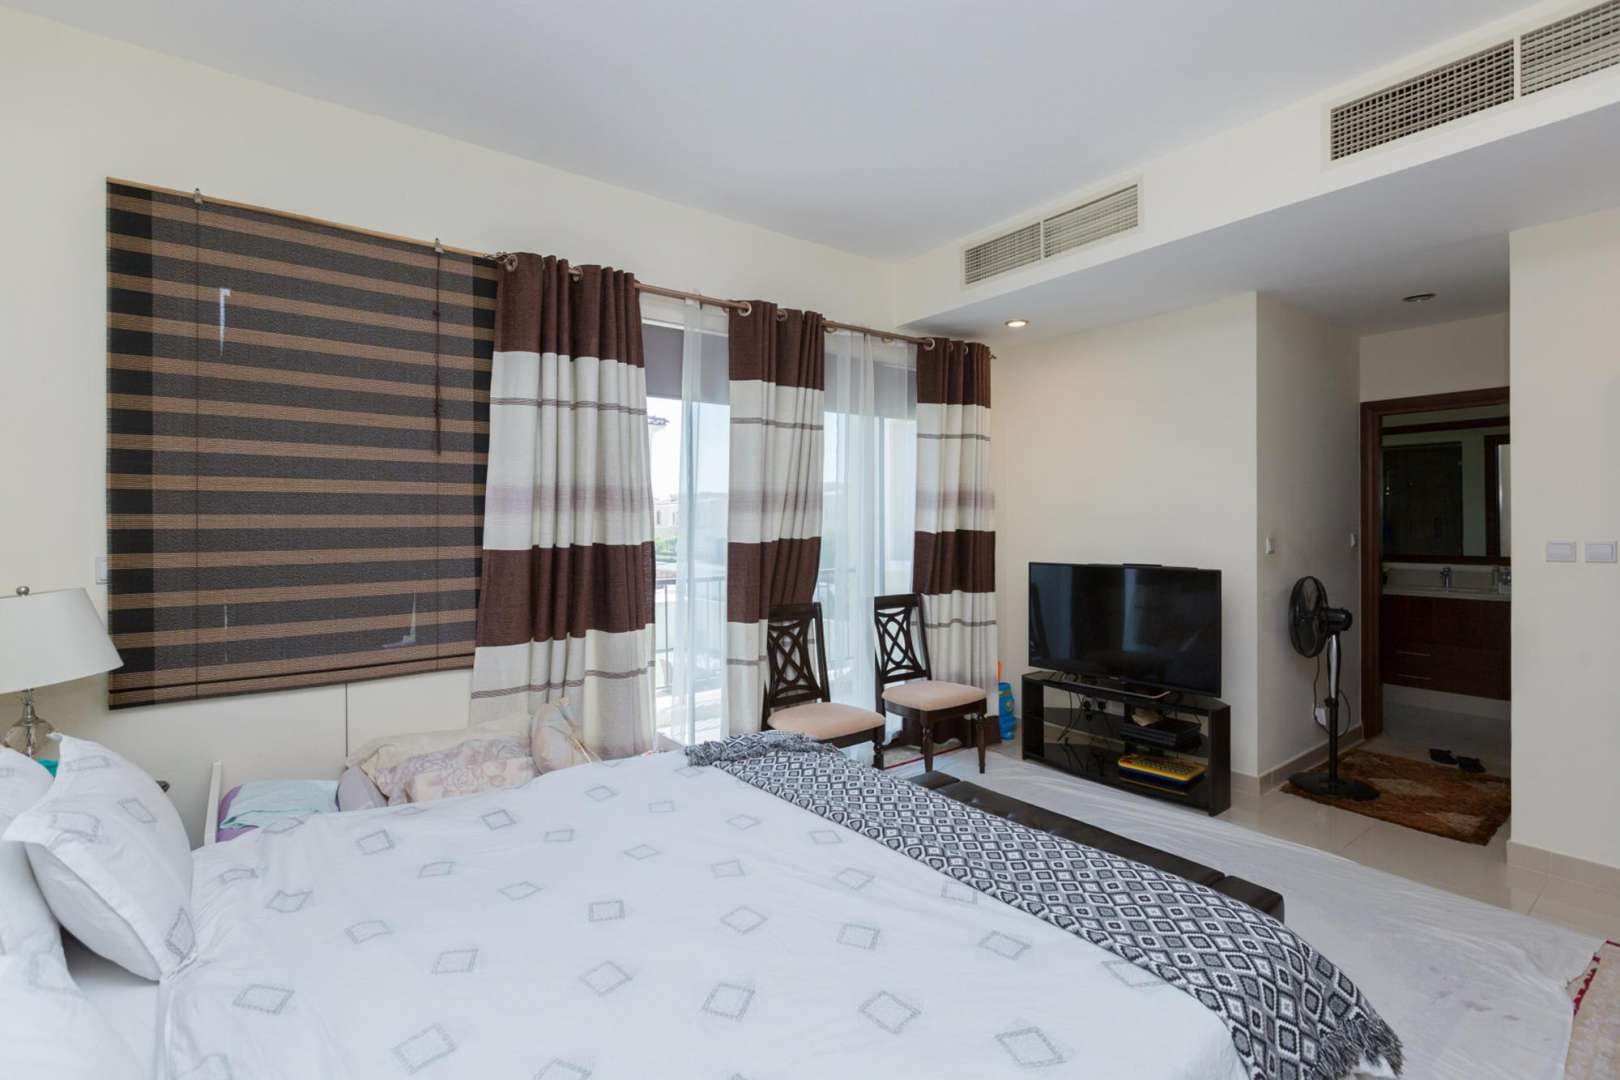 4 Bedroom Villa For Rent Samara Lp05108 Fc948f0dda1fd80.jpg